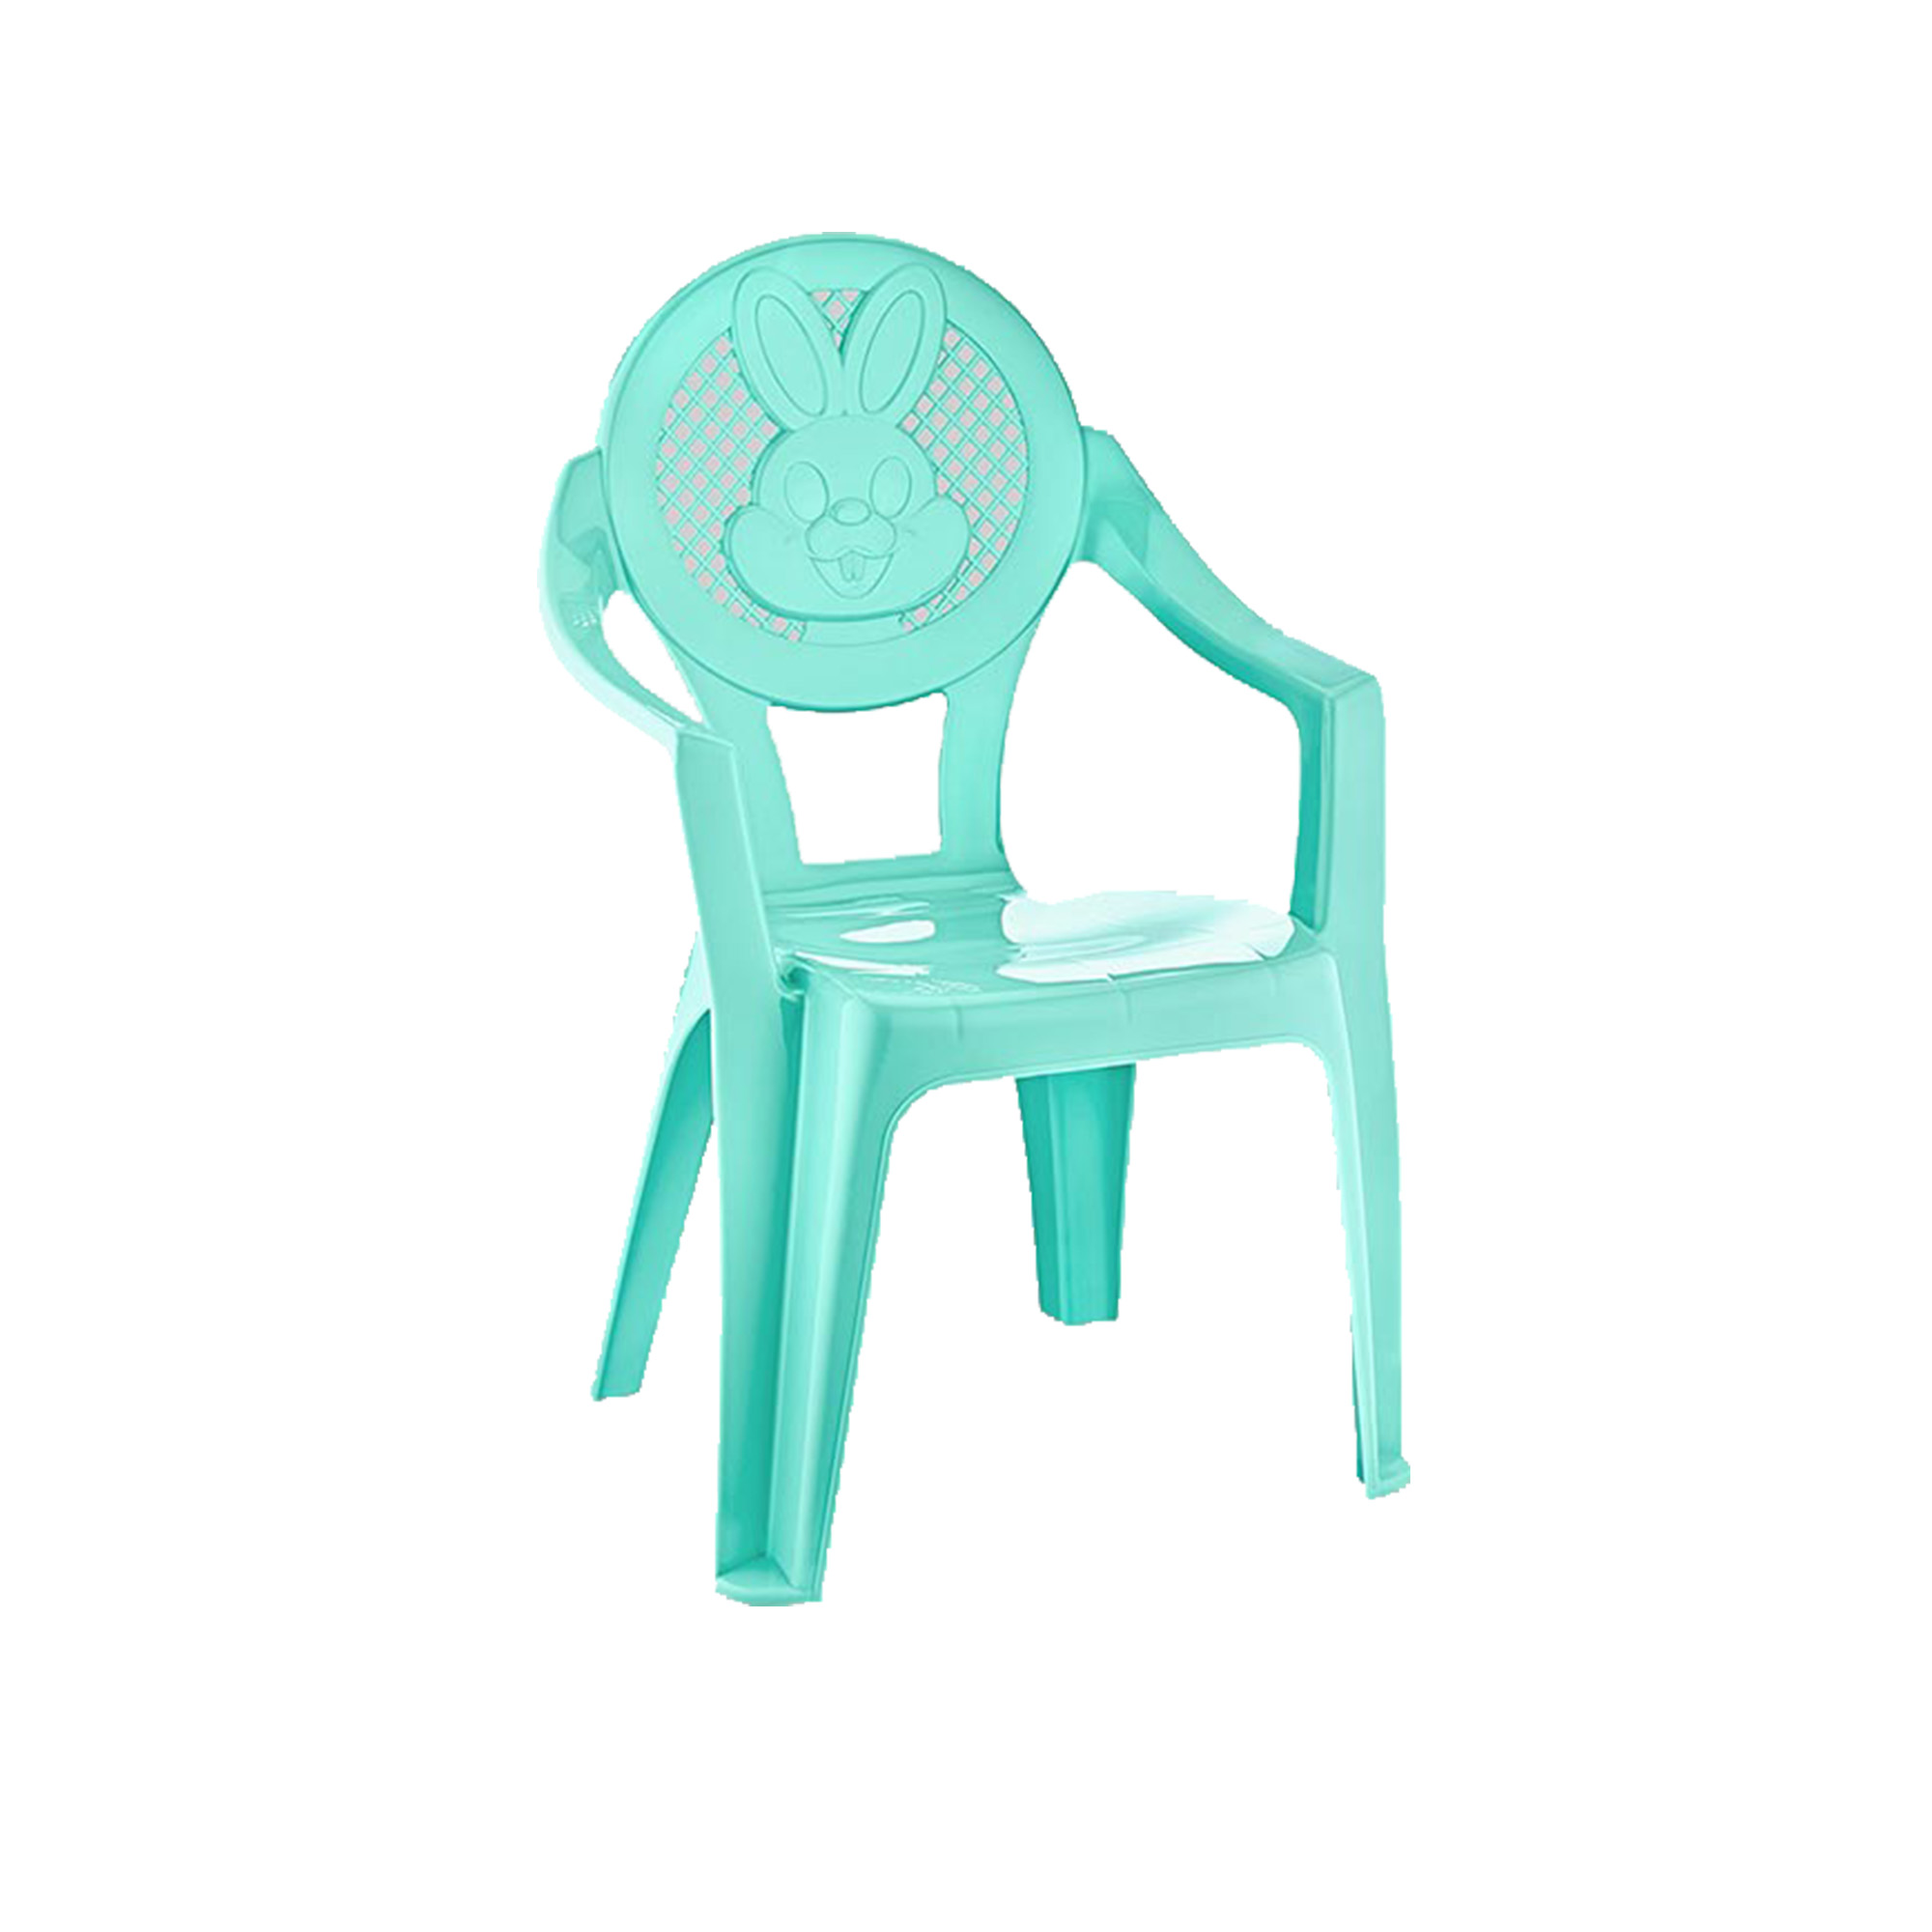 Մանկական աթոռ E-302